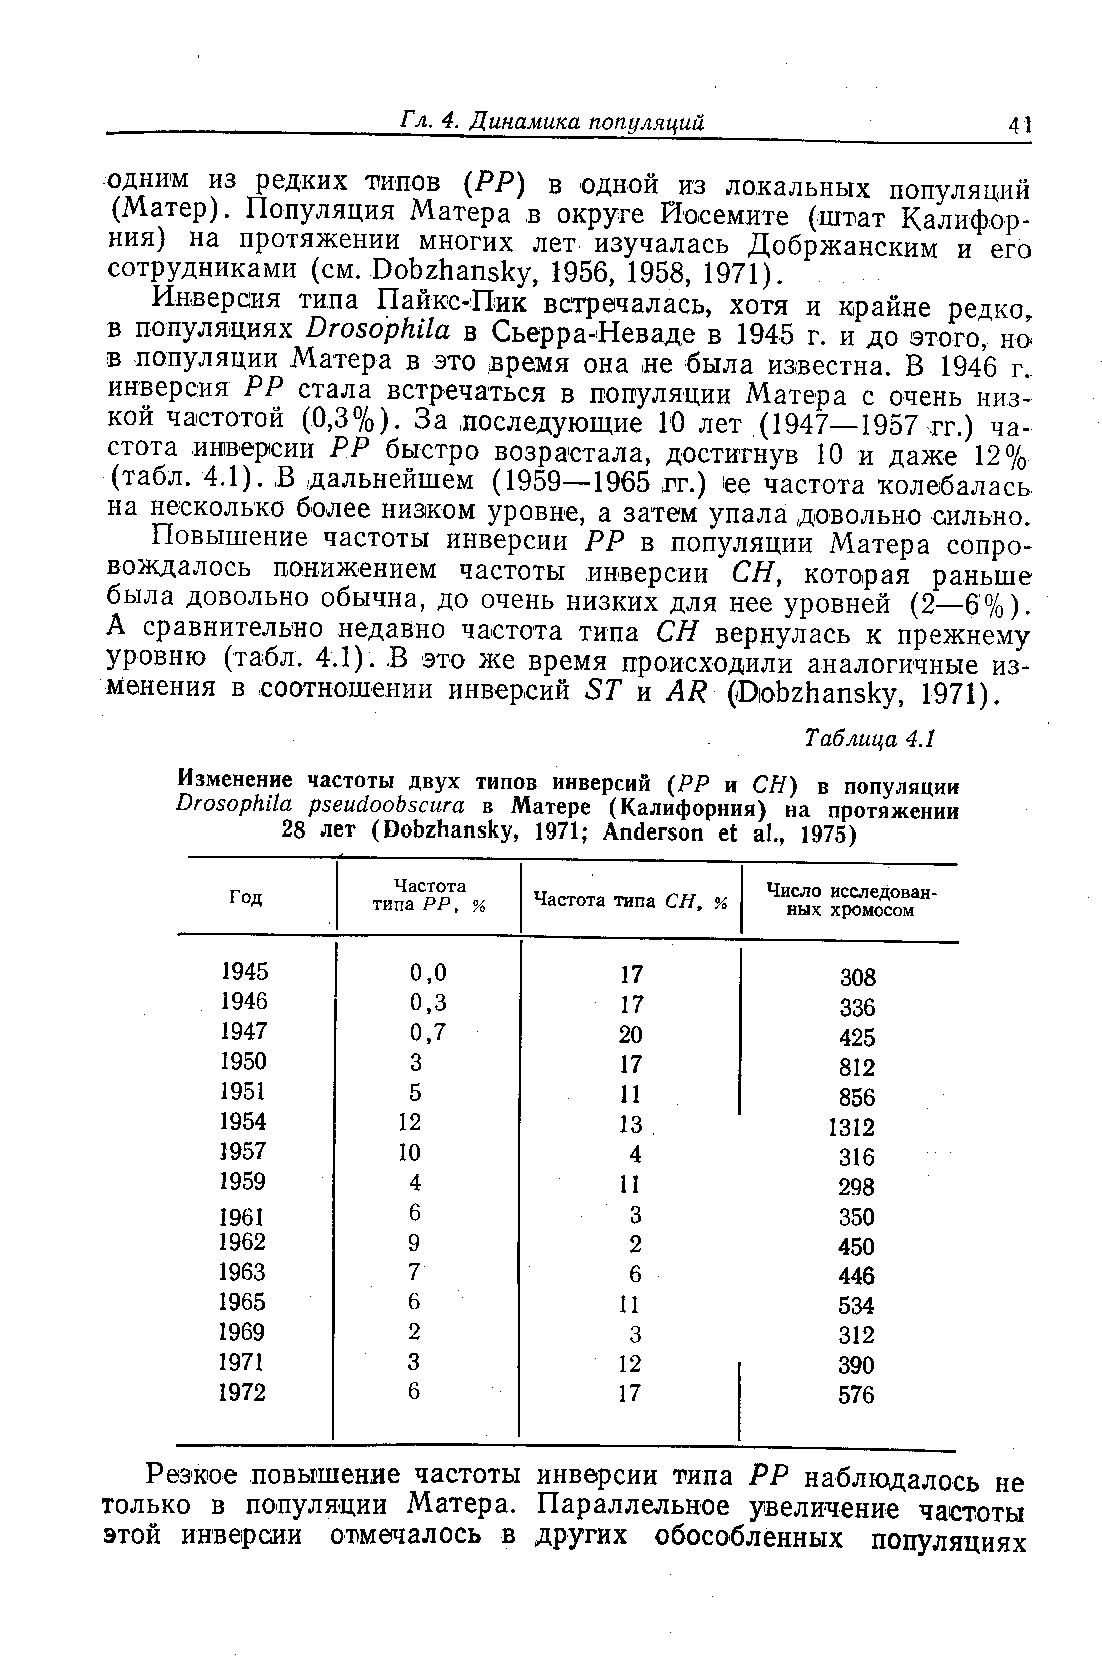 Повышение частоты инверсии РР в популяции Матера сопровождалось понижением частоты. инверсии СН, которая раньше была довольно обычна, до очень низких для нее уровней (2—6%). А сравнительно недавно частота типа СН вернулась к прежнему уровню (табл. 4.1). В это же время происходили аналогичные изменения в соотношении инверсий ST и AR (Dobzhansky, 1971).